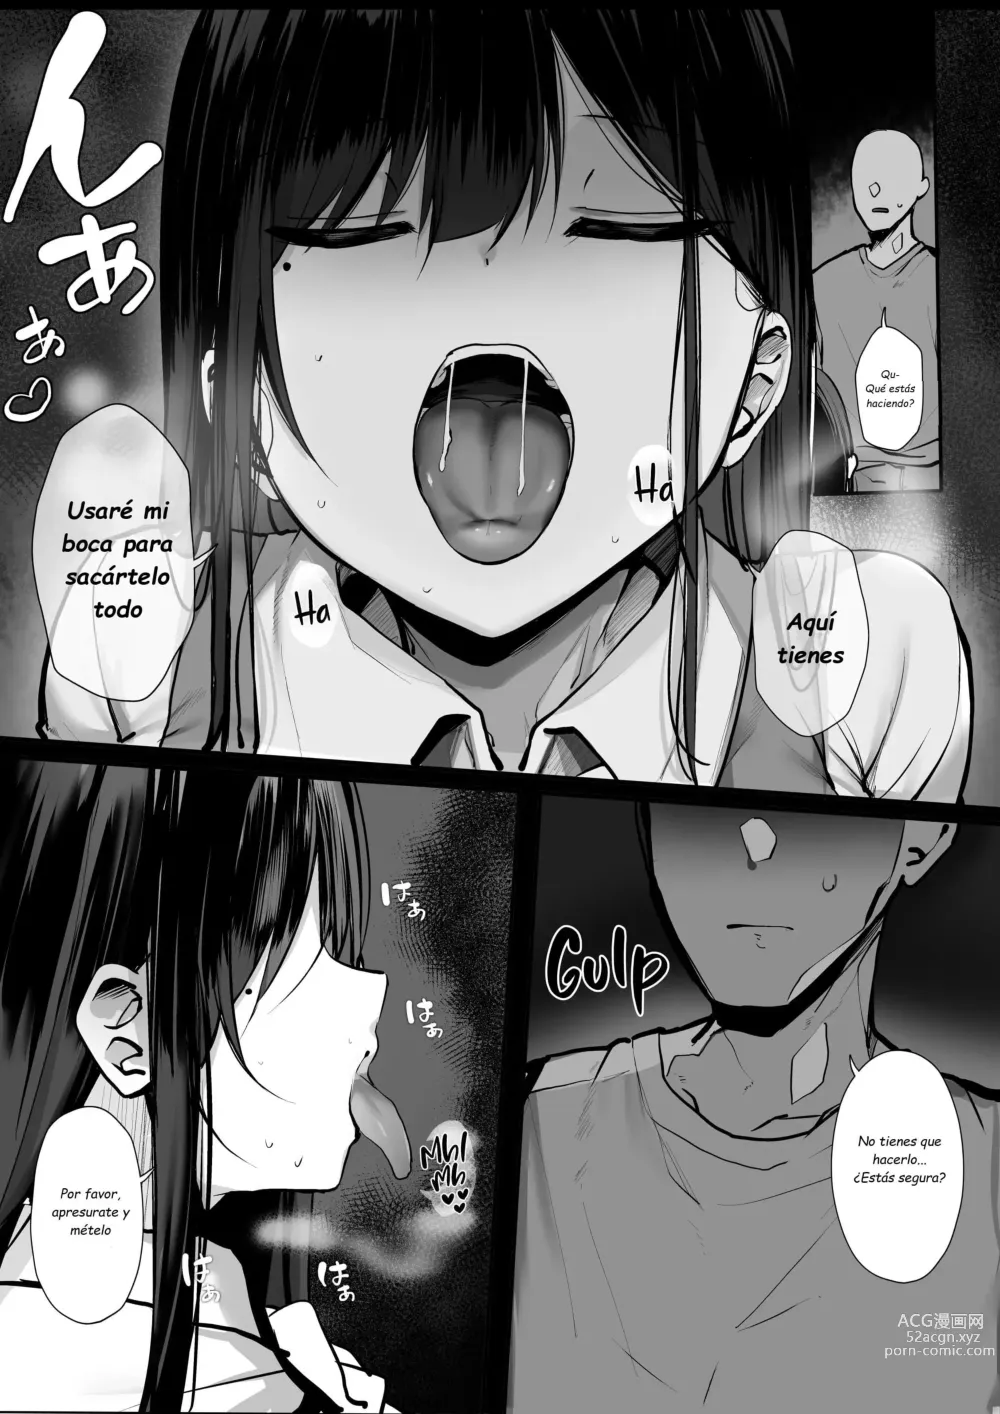 Page 9 of doujinshi Hey, donde está el condón?